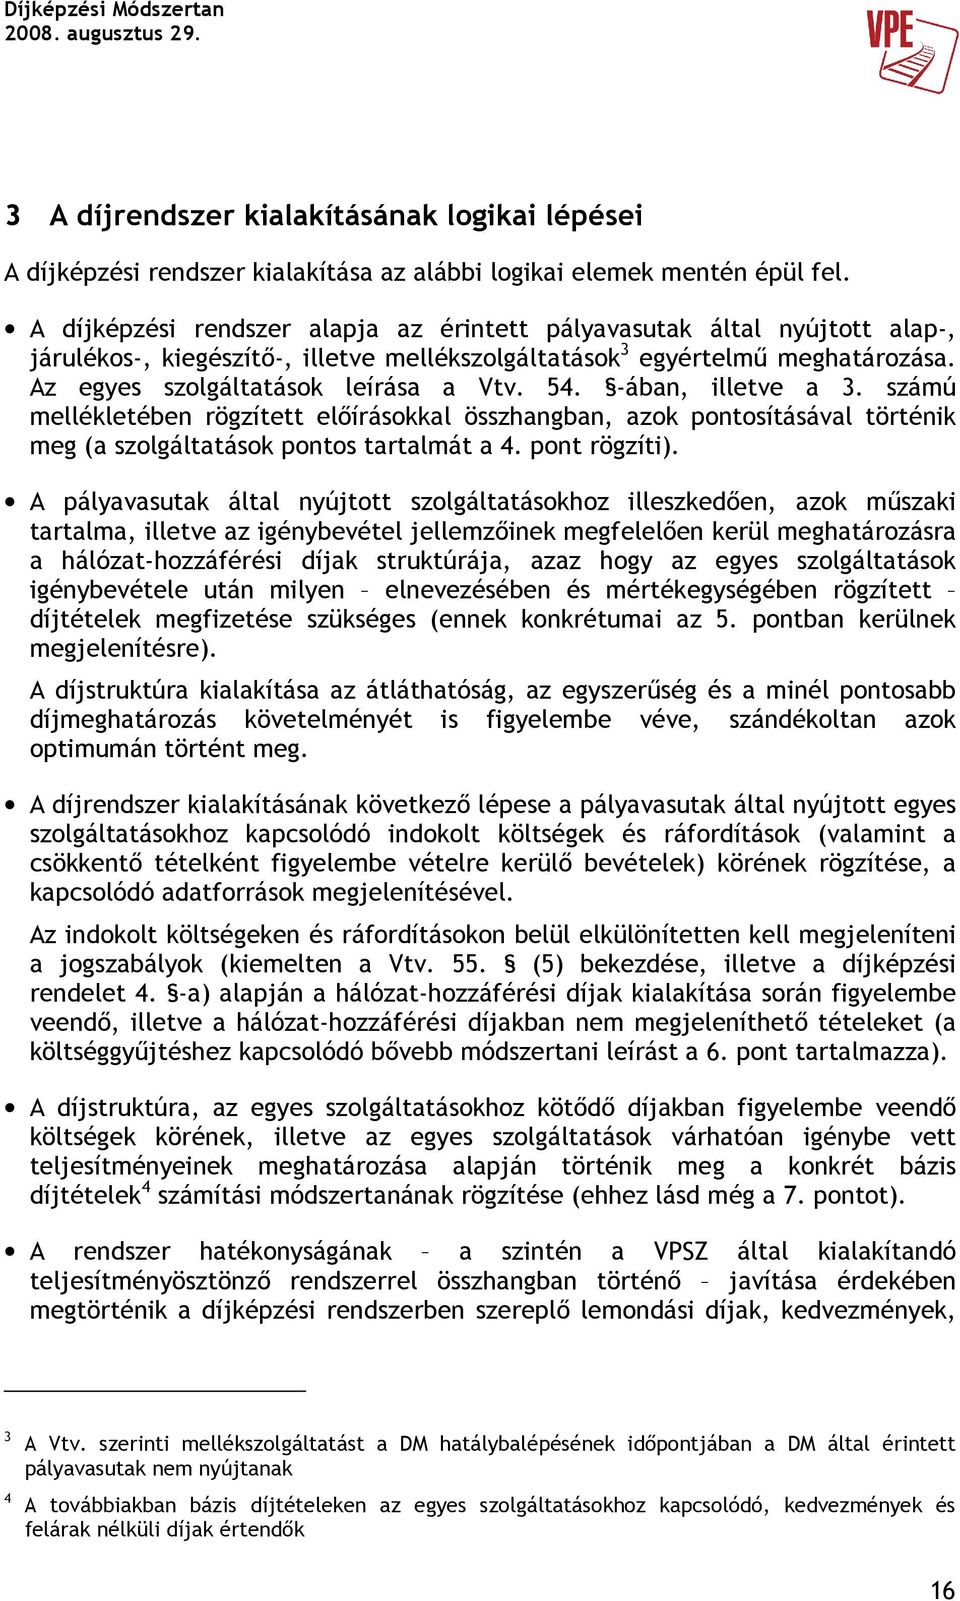 ában, illetve a 3. számú mellékletében rögzített elıírásokkal összhangban, azok pontosításával történik meg (a szolgáltatások pontos tartalmát a 4. pont rögzíti).